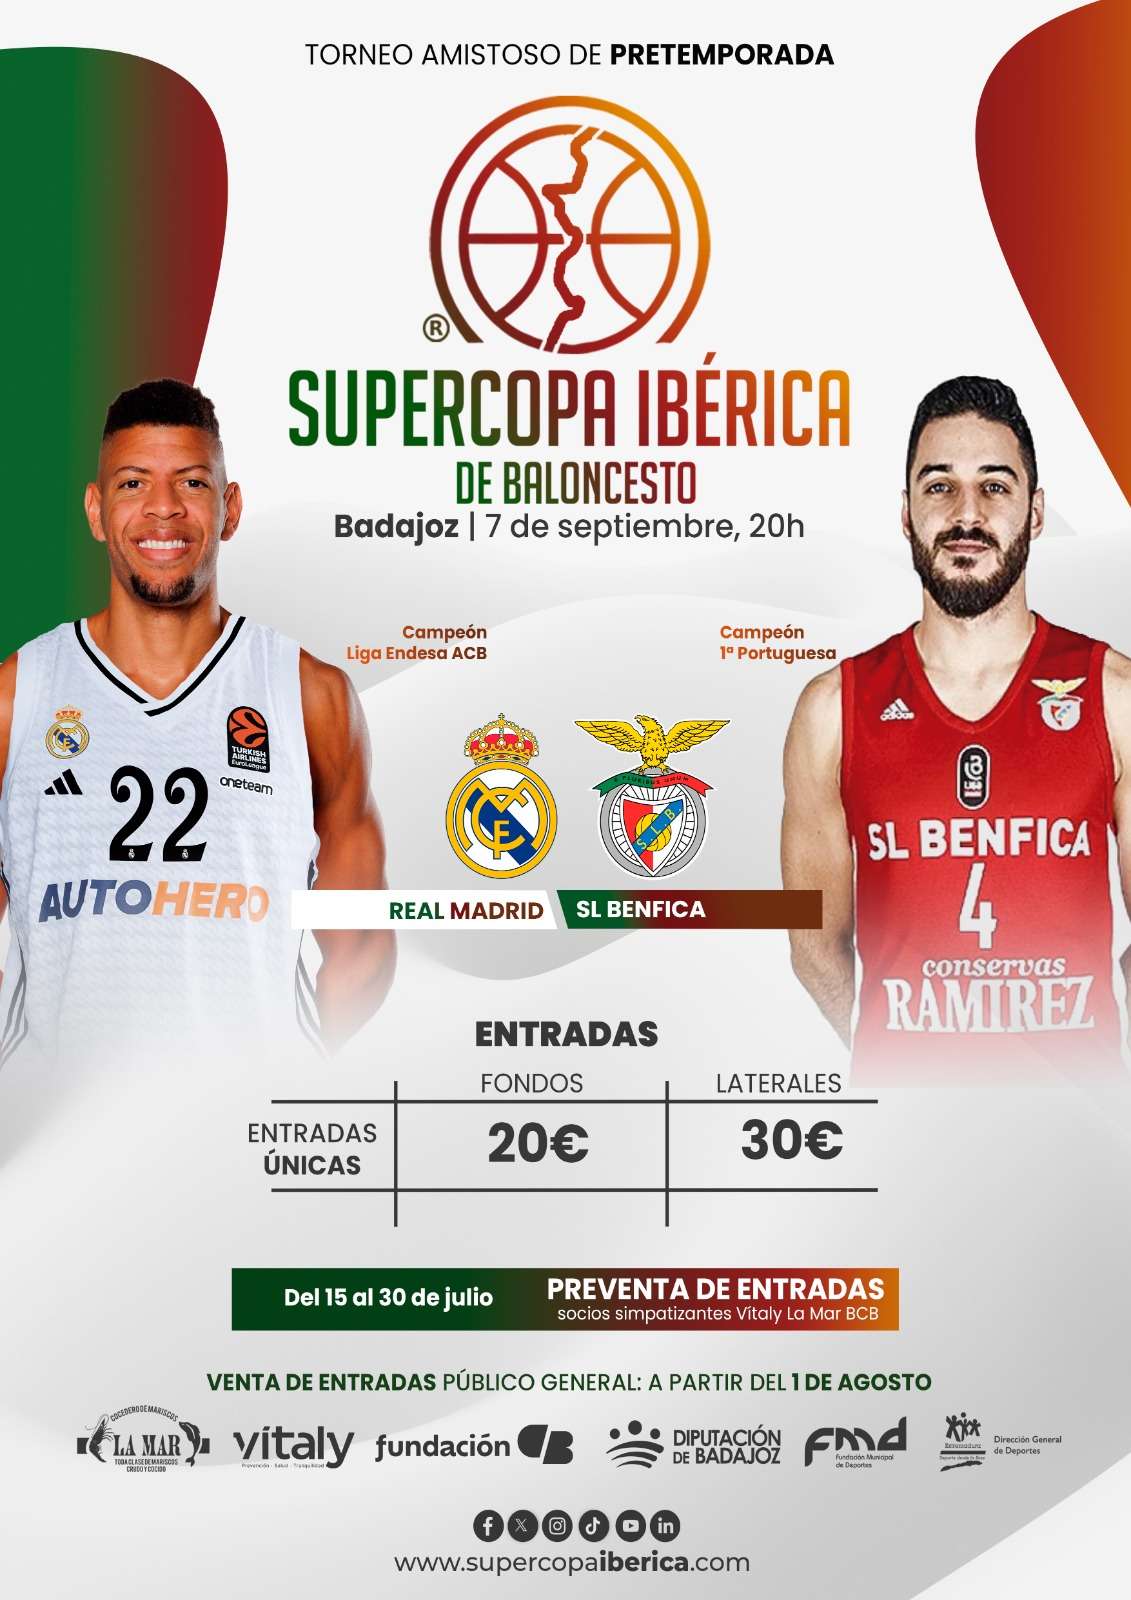 Real Madrid y Benfica se enfrentarán el 7 de septiembre en la primera Supercopa Ibérica de baloncesto